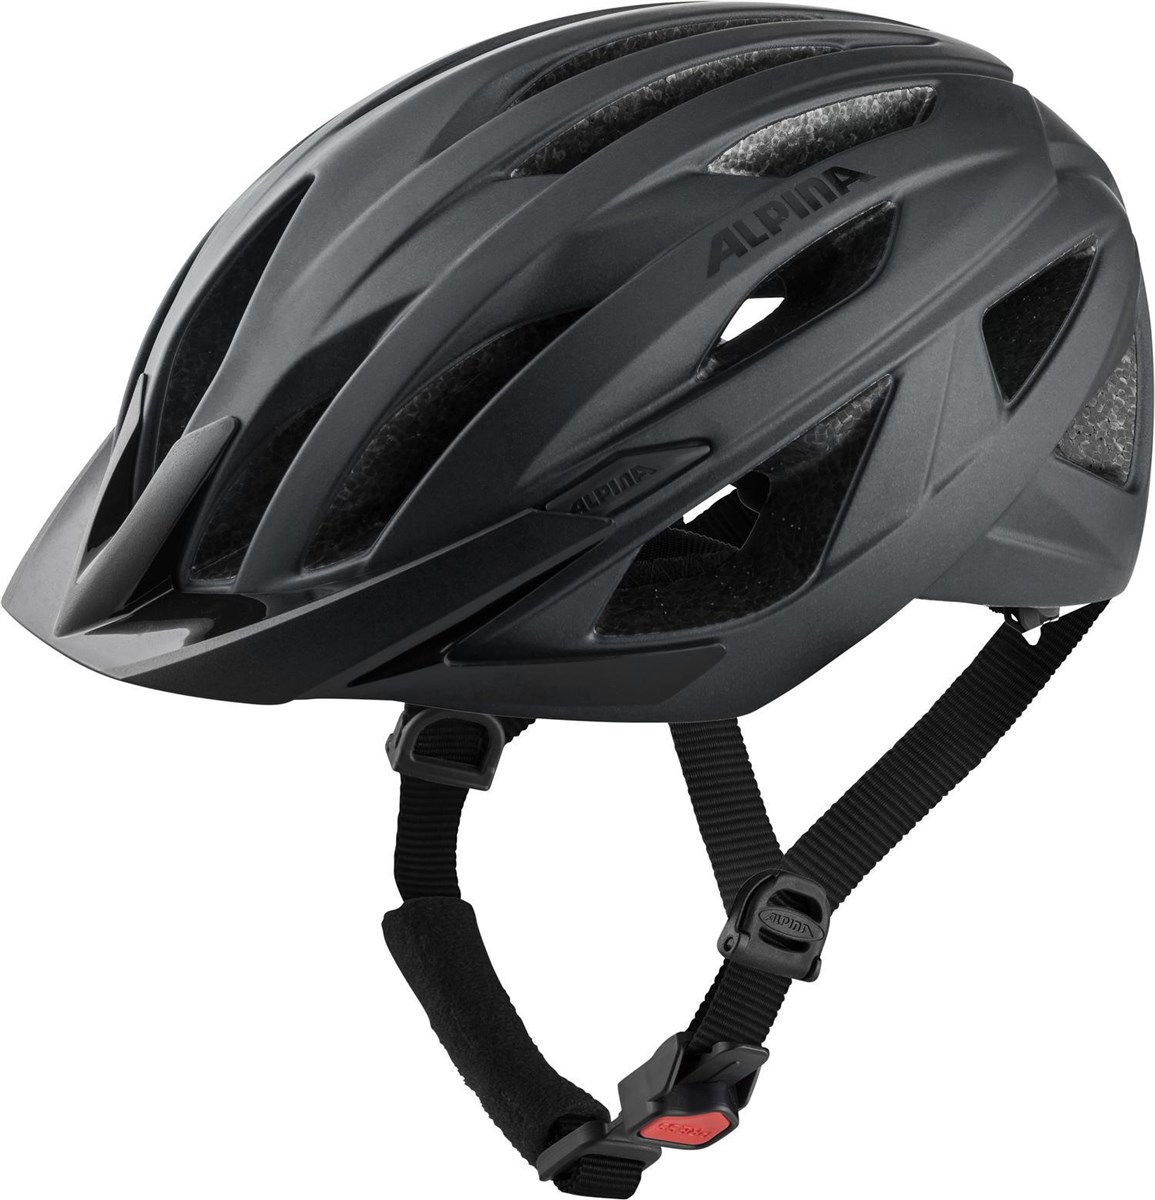 Alpina Parana Urban Cycling Helmet product image